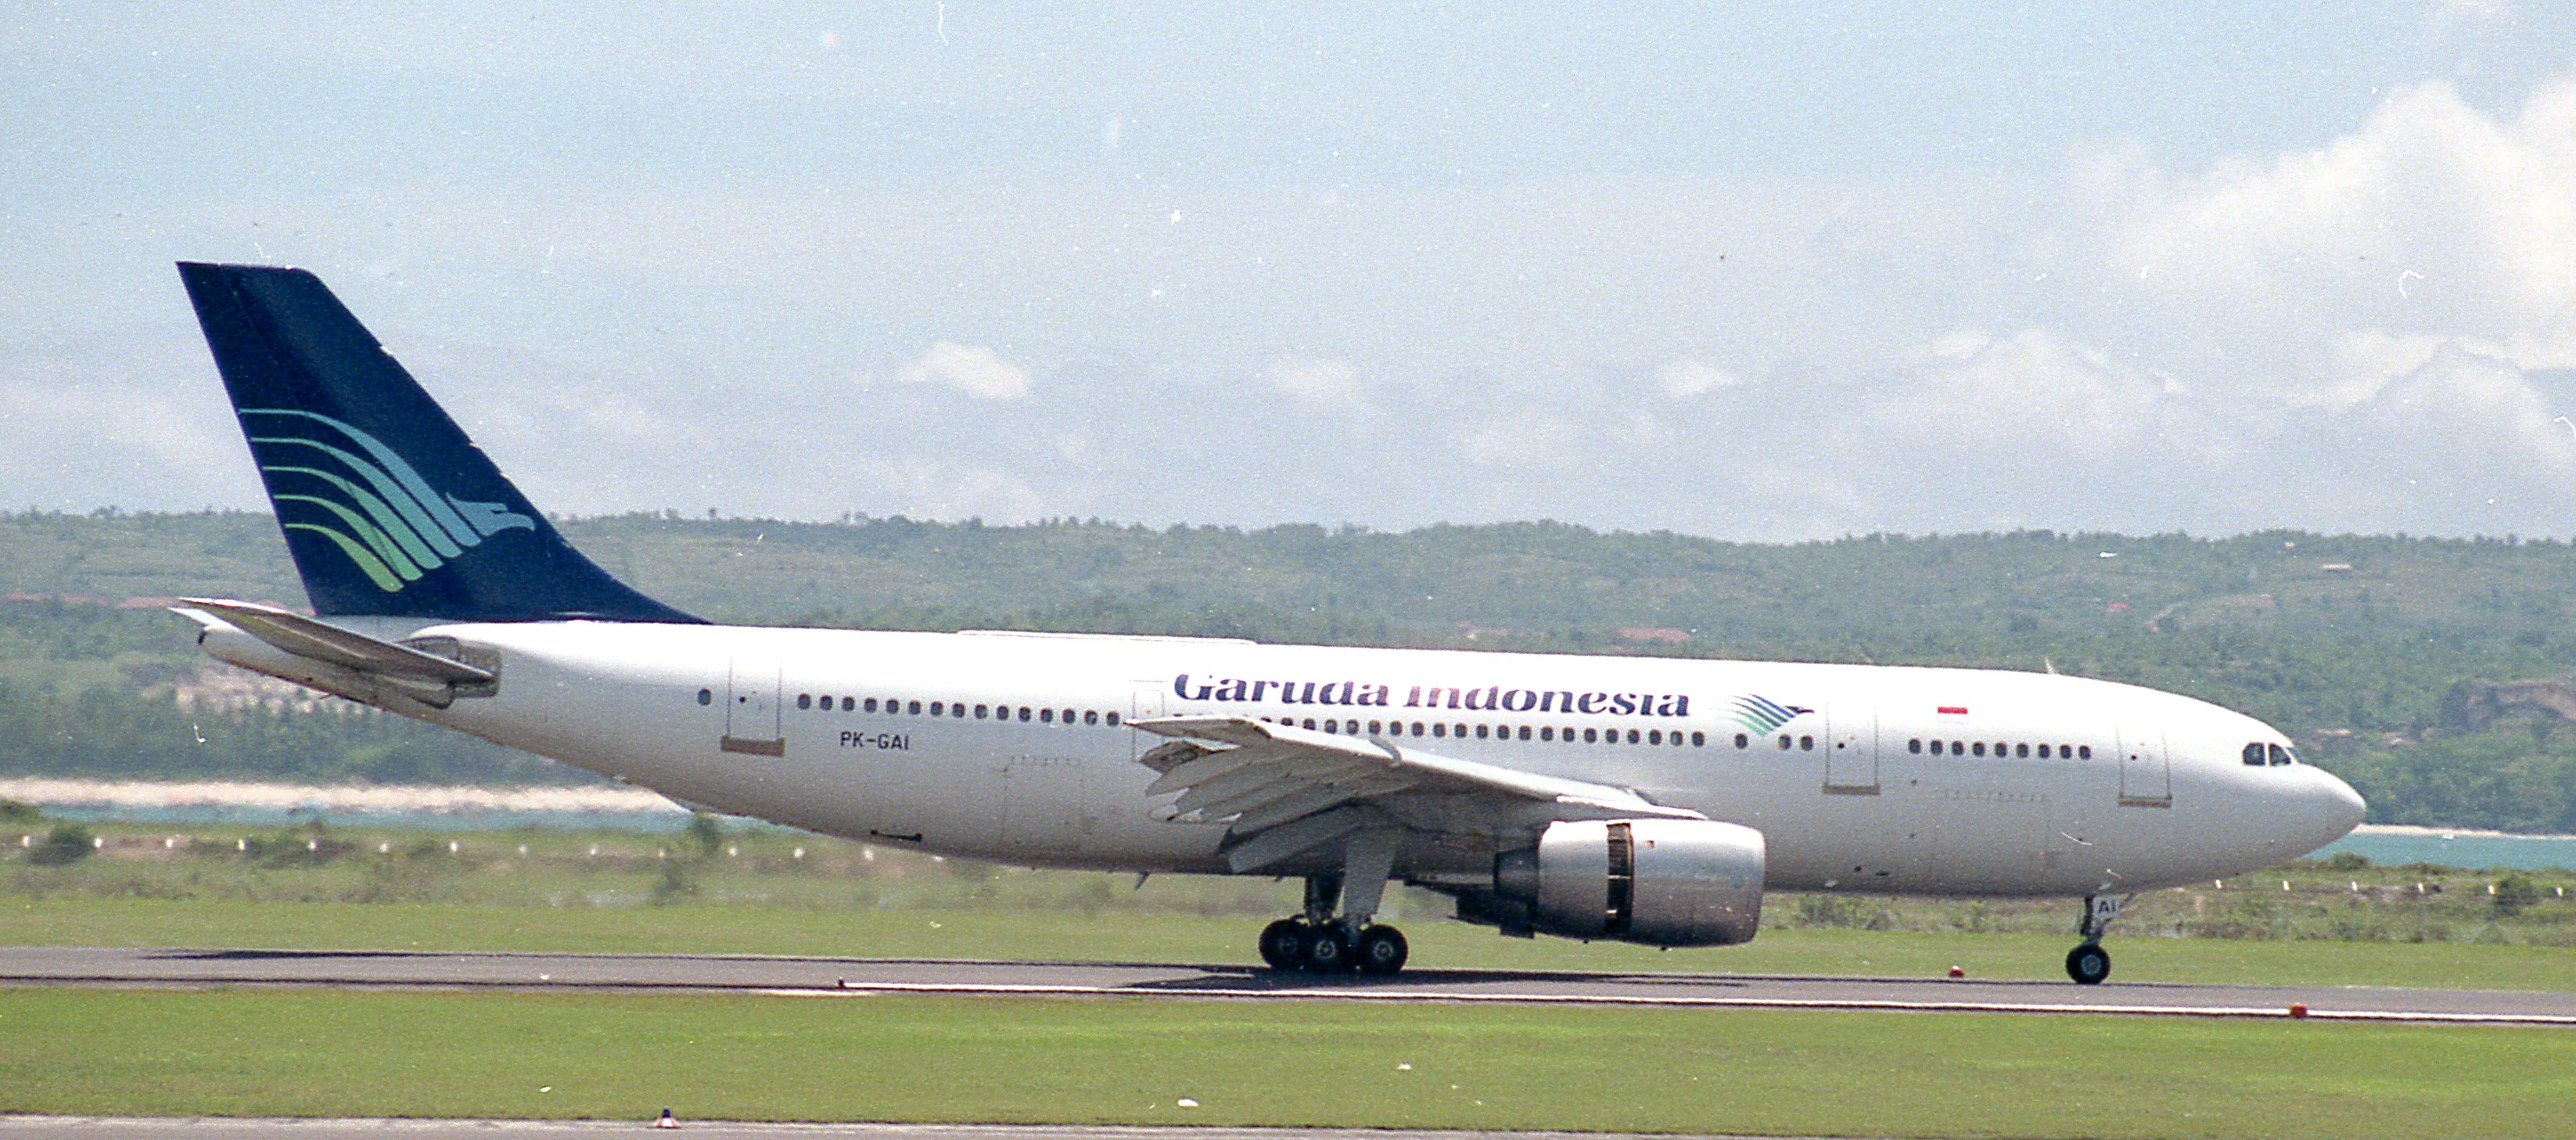 ガルーダ・インドネシア航空152便墜落事故 - Wikipedia